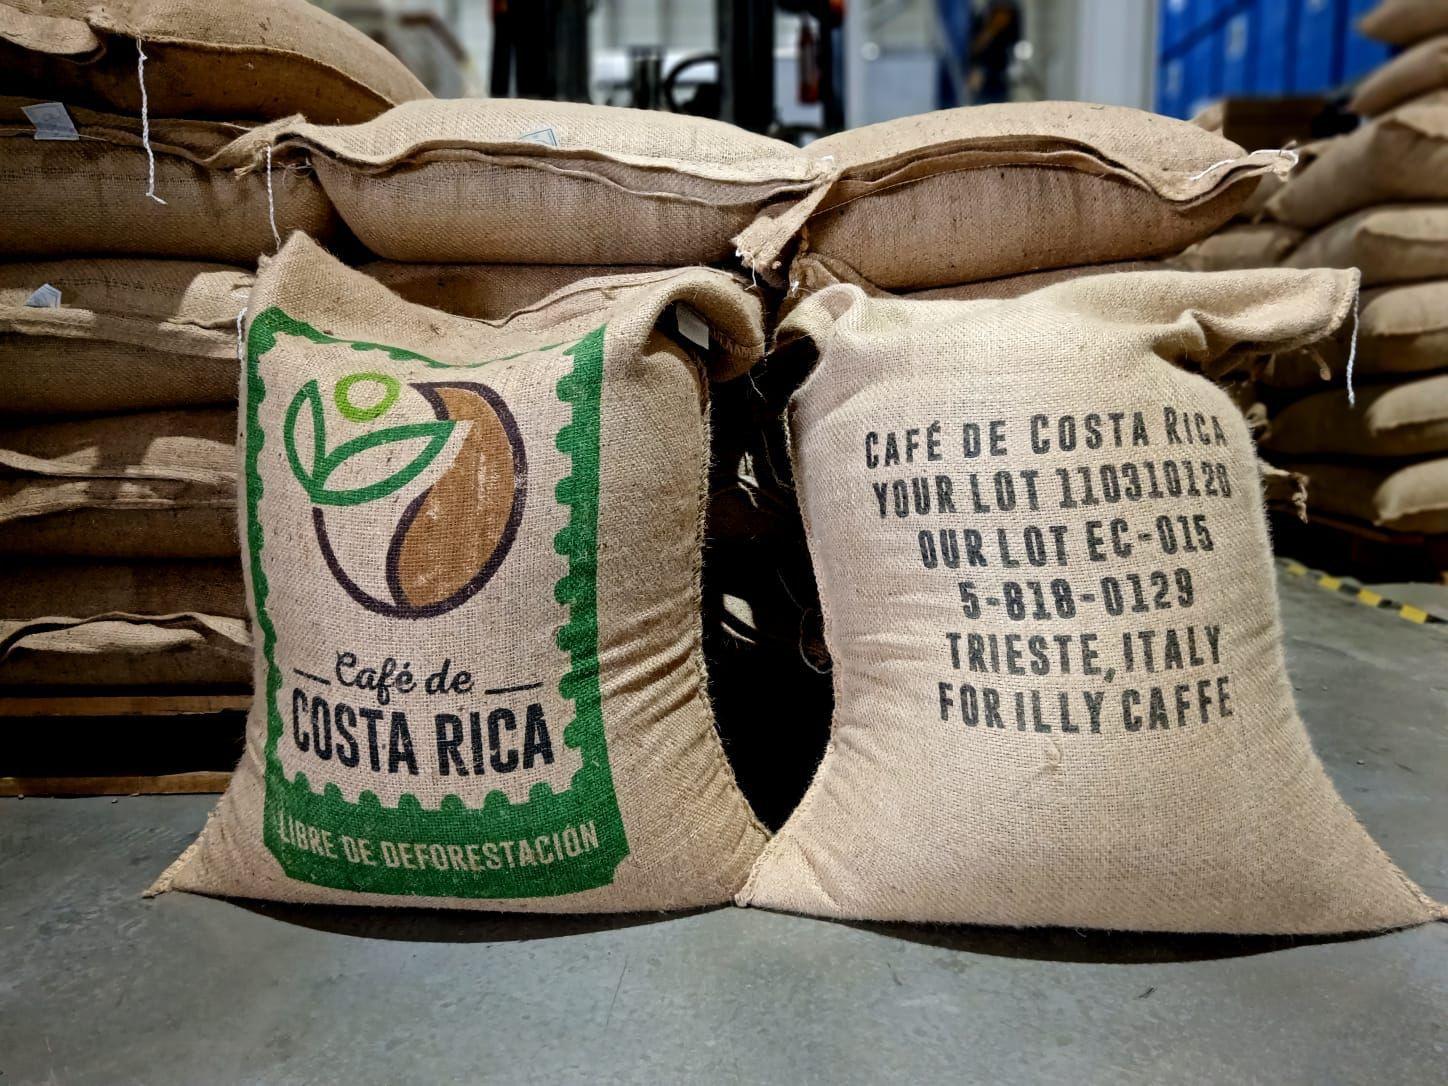 Costa Rica exporta su primer lote de café libre de deforestación